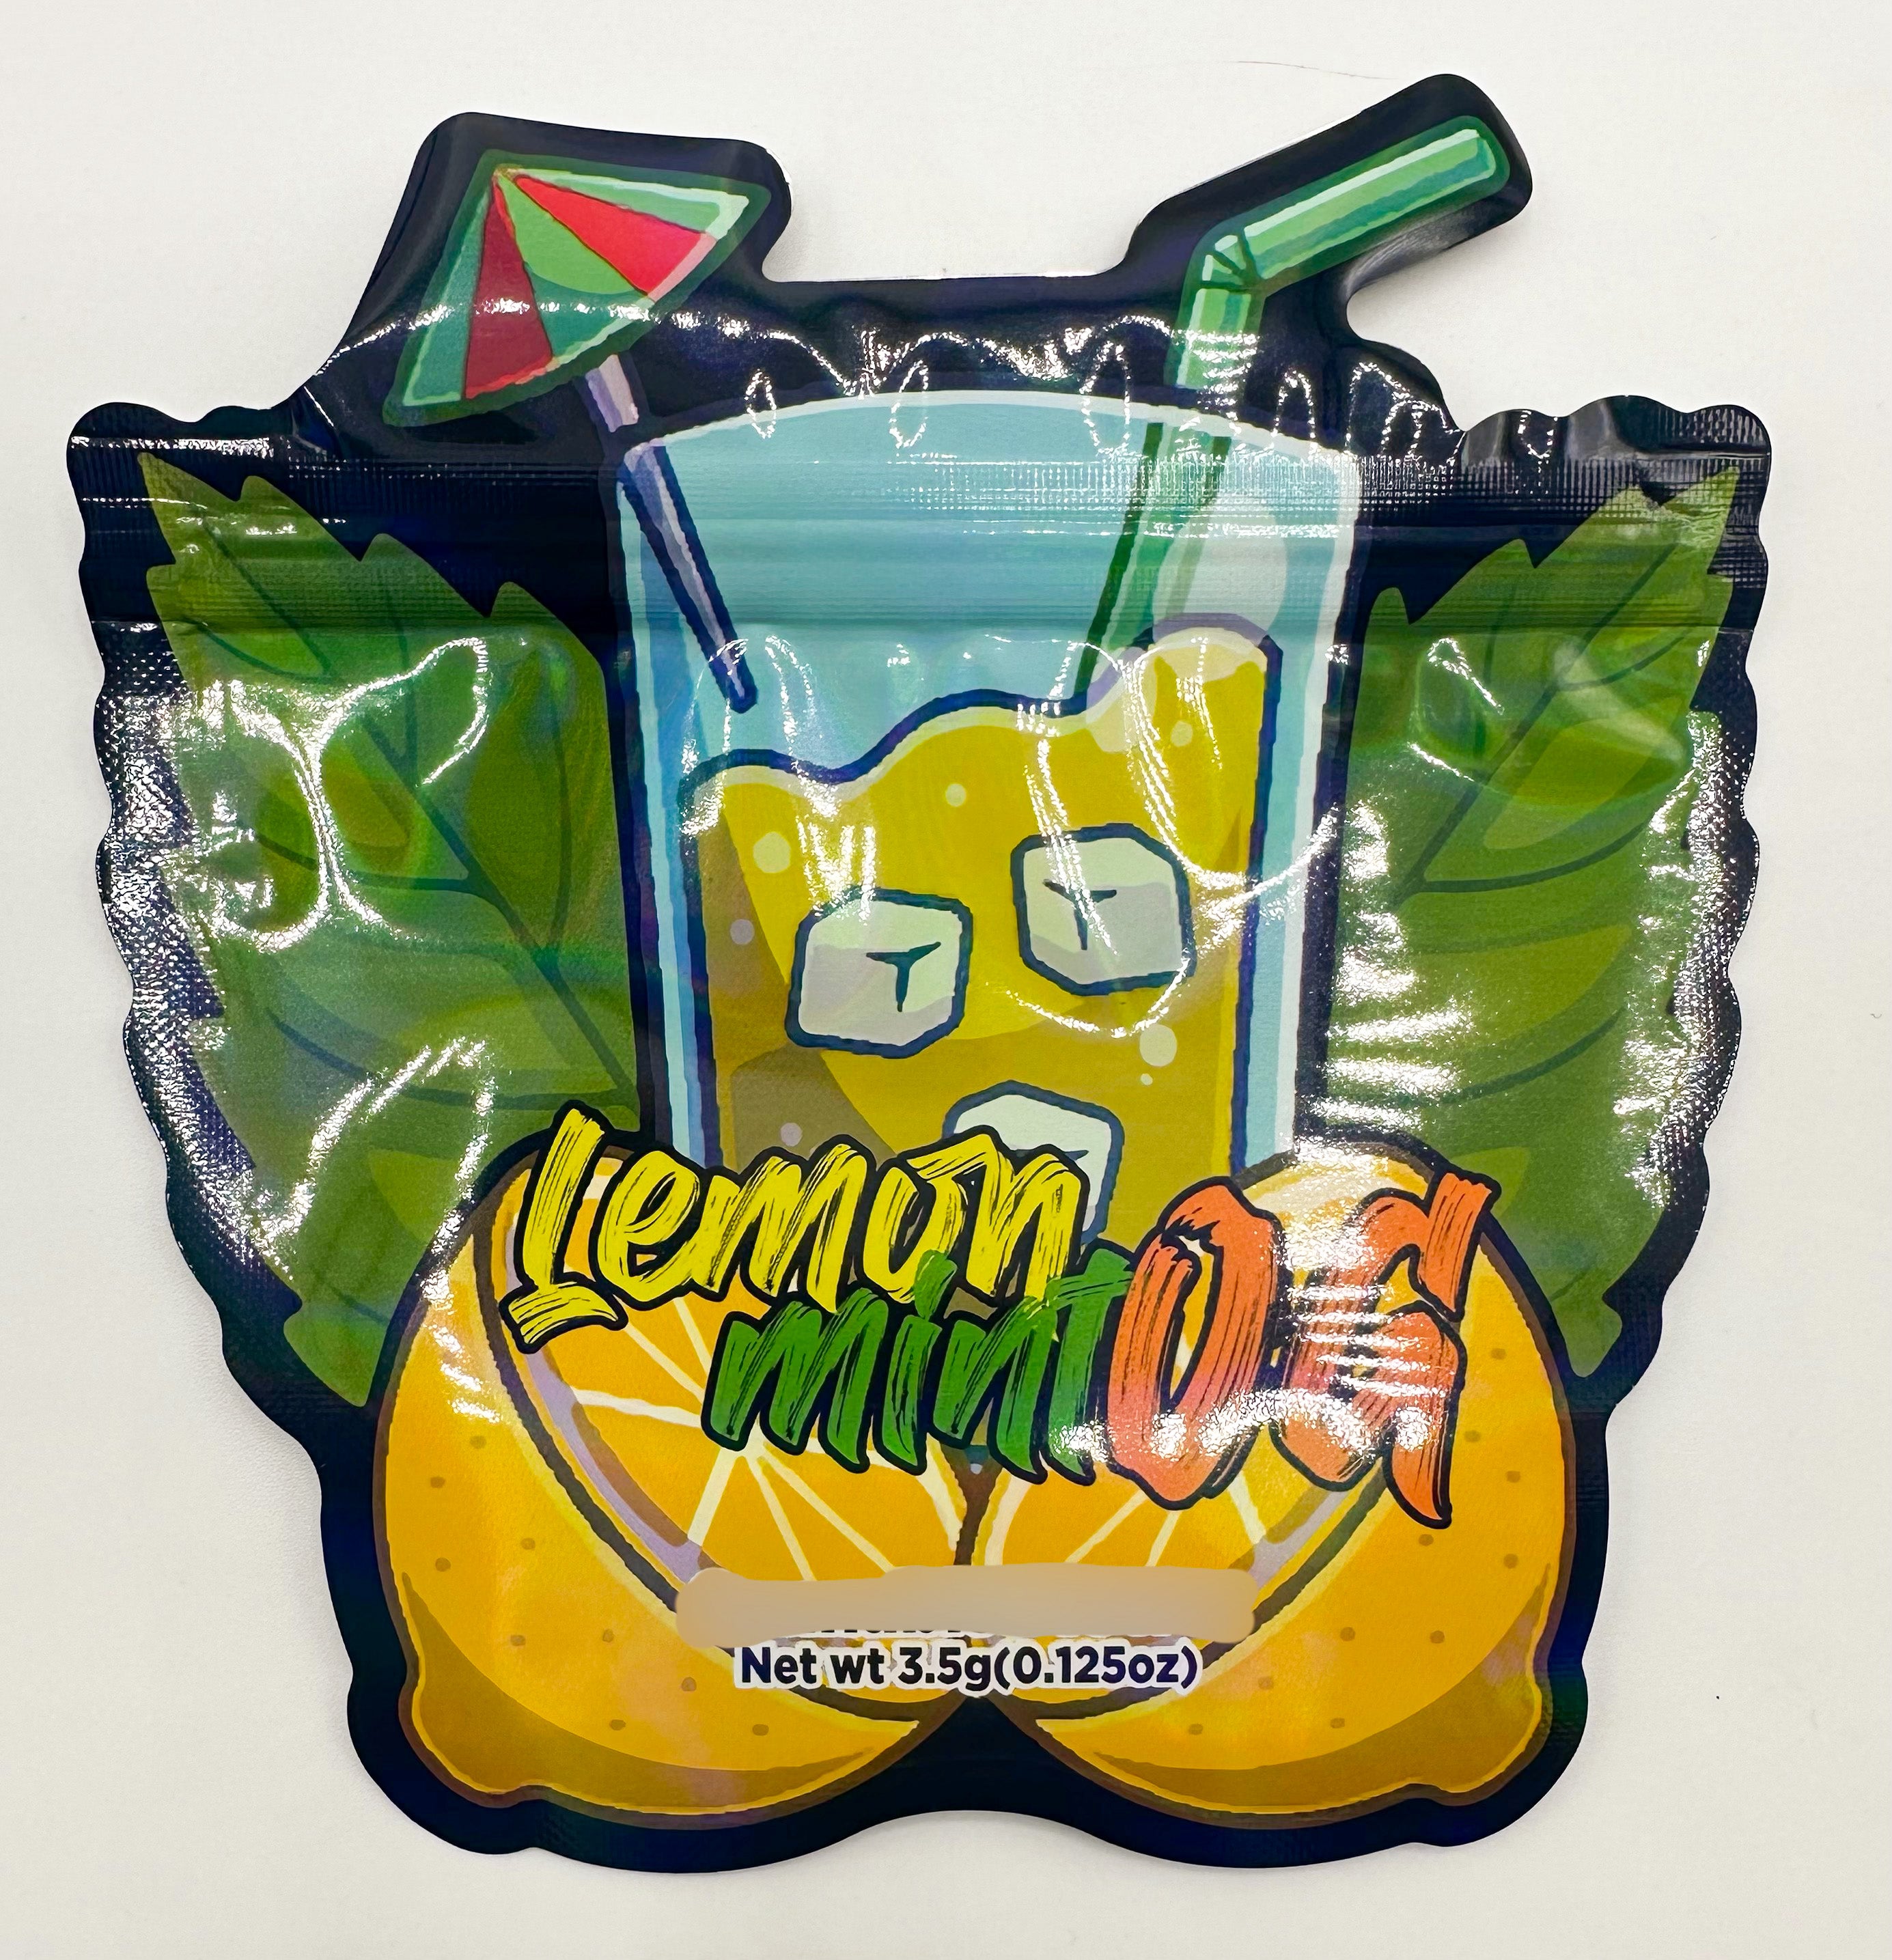 3D Lemon Mint OG 3.5g Mylar Bags